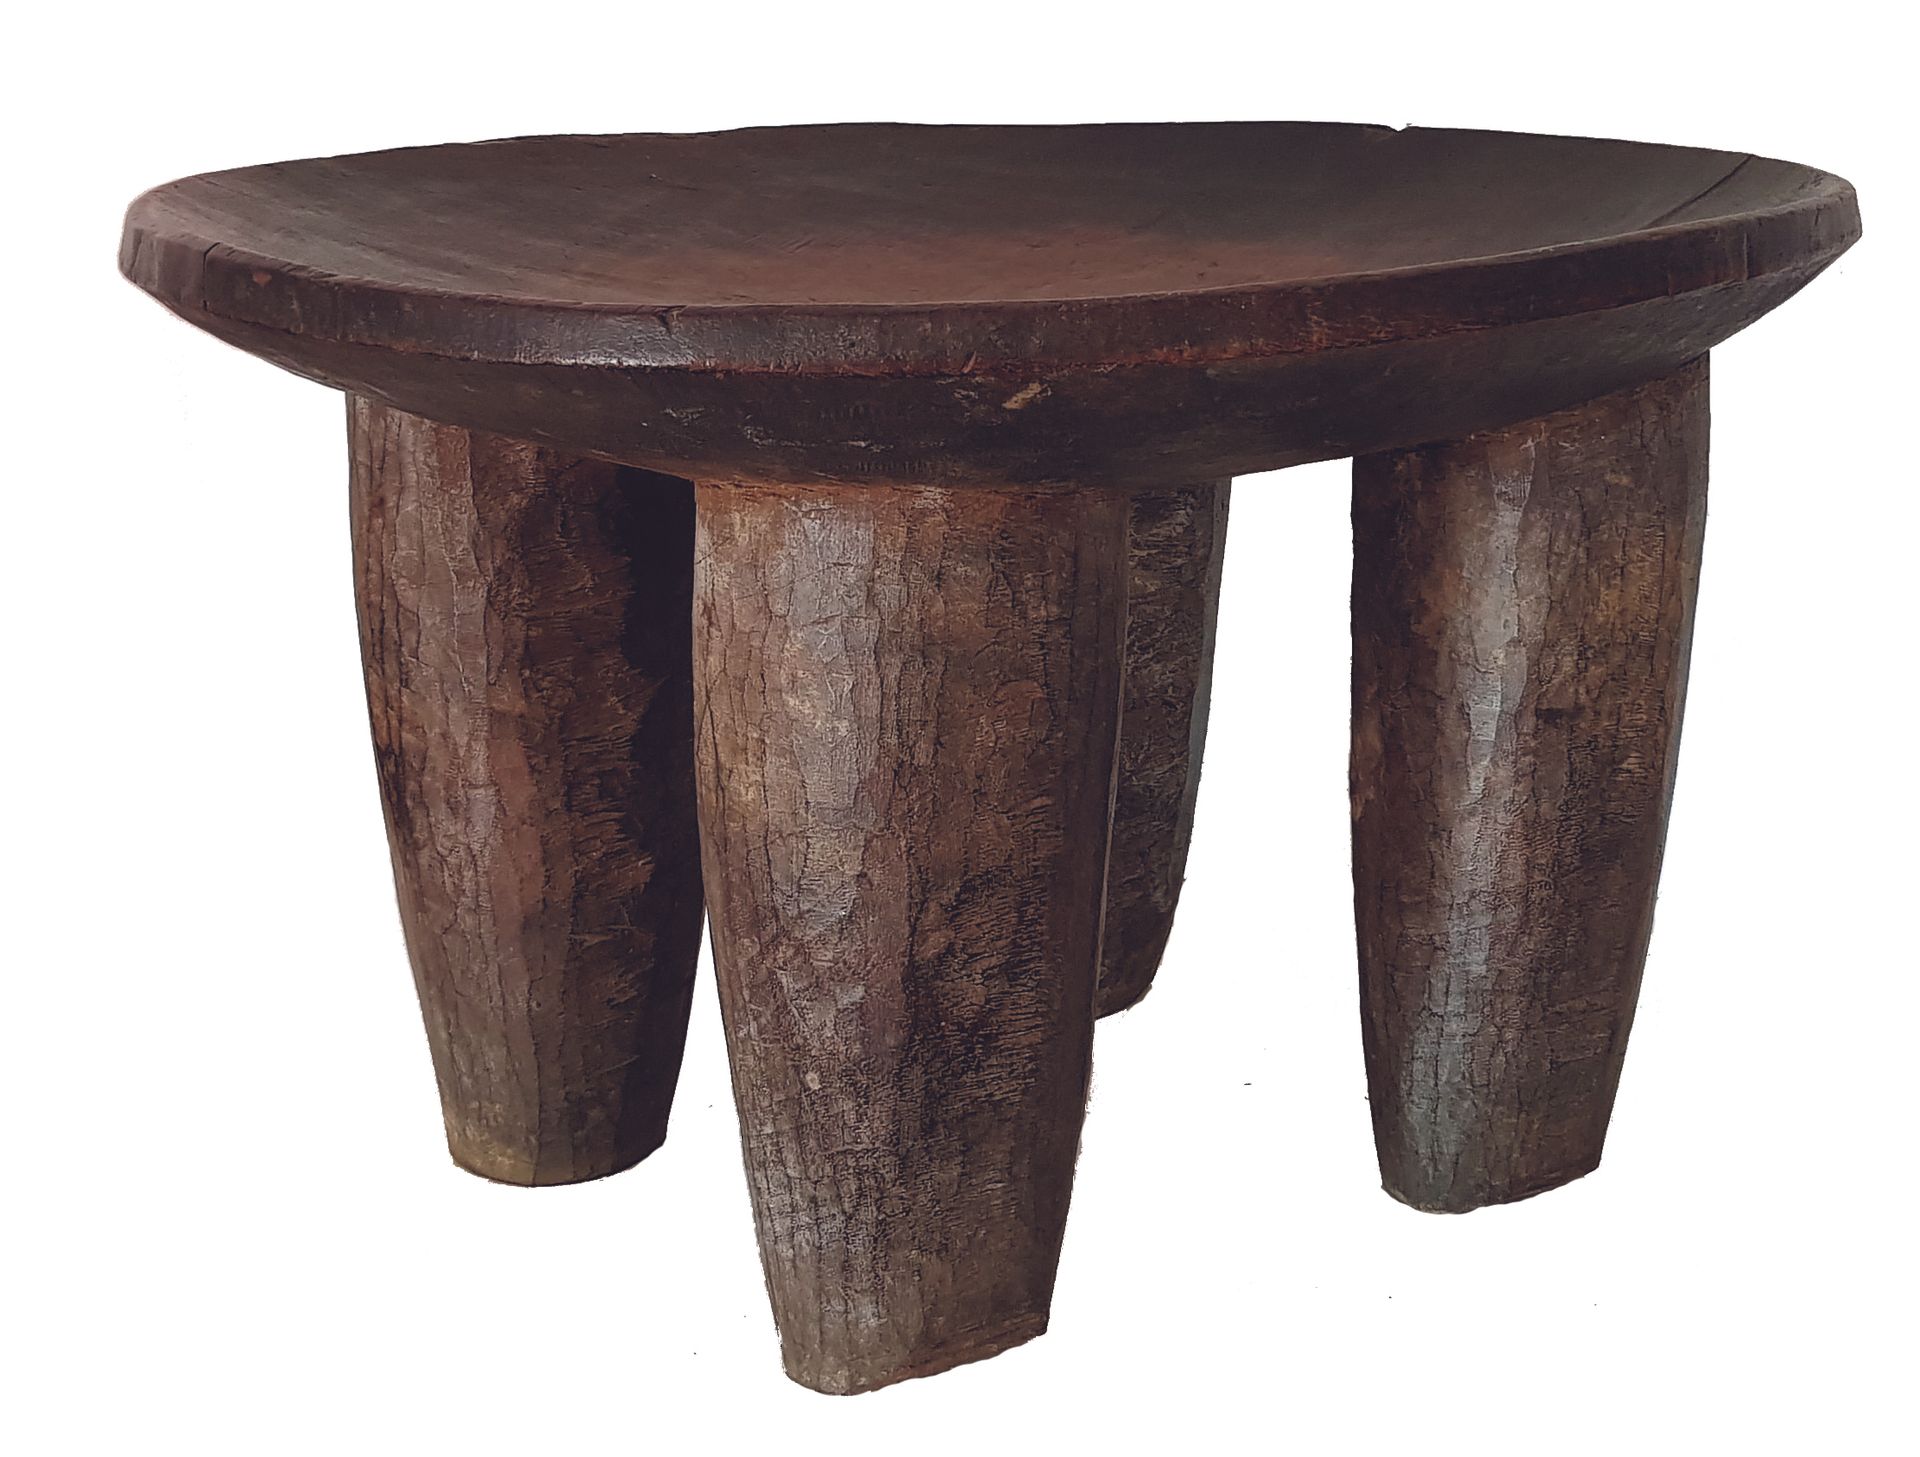 Siège Kolo SENOUFO 
座椅
，四条圆锥形腿，木质，有棕色铜锈，高34厘米，象牙海岸

12月4日（星期六）上午8点至下午1点，在巴黎（LA S&hellip;